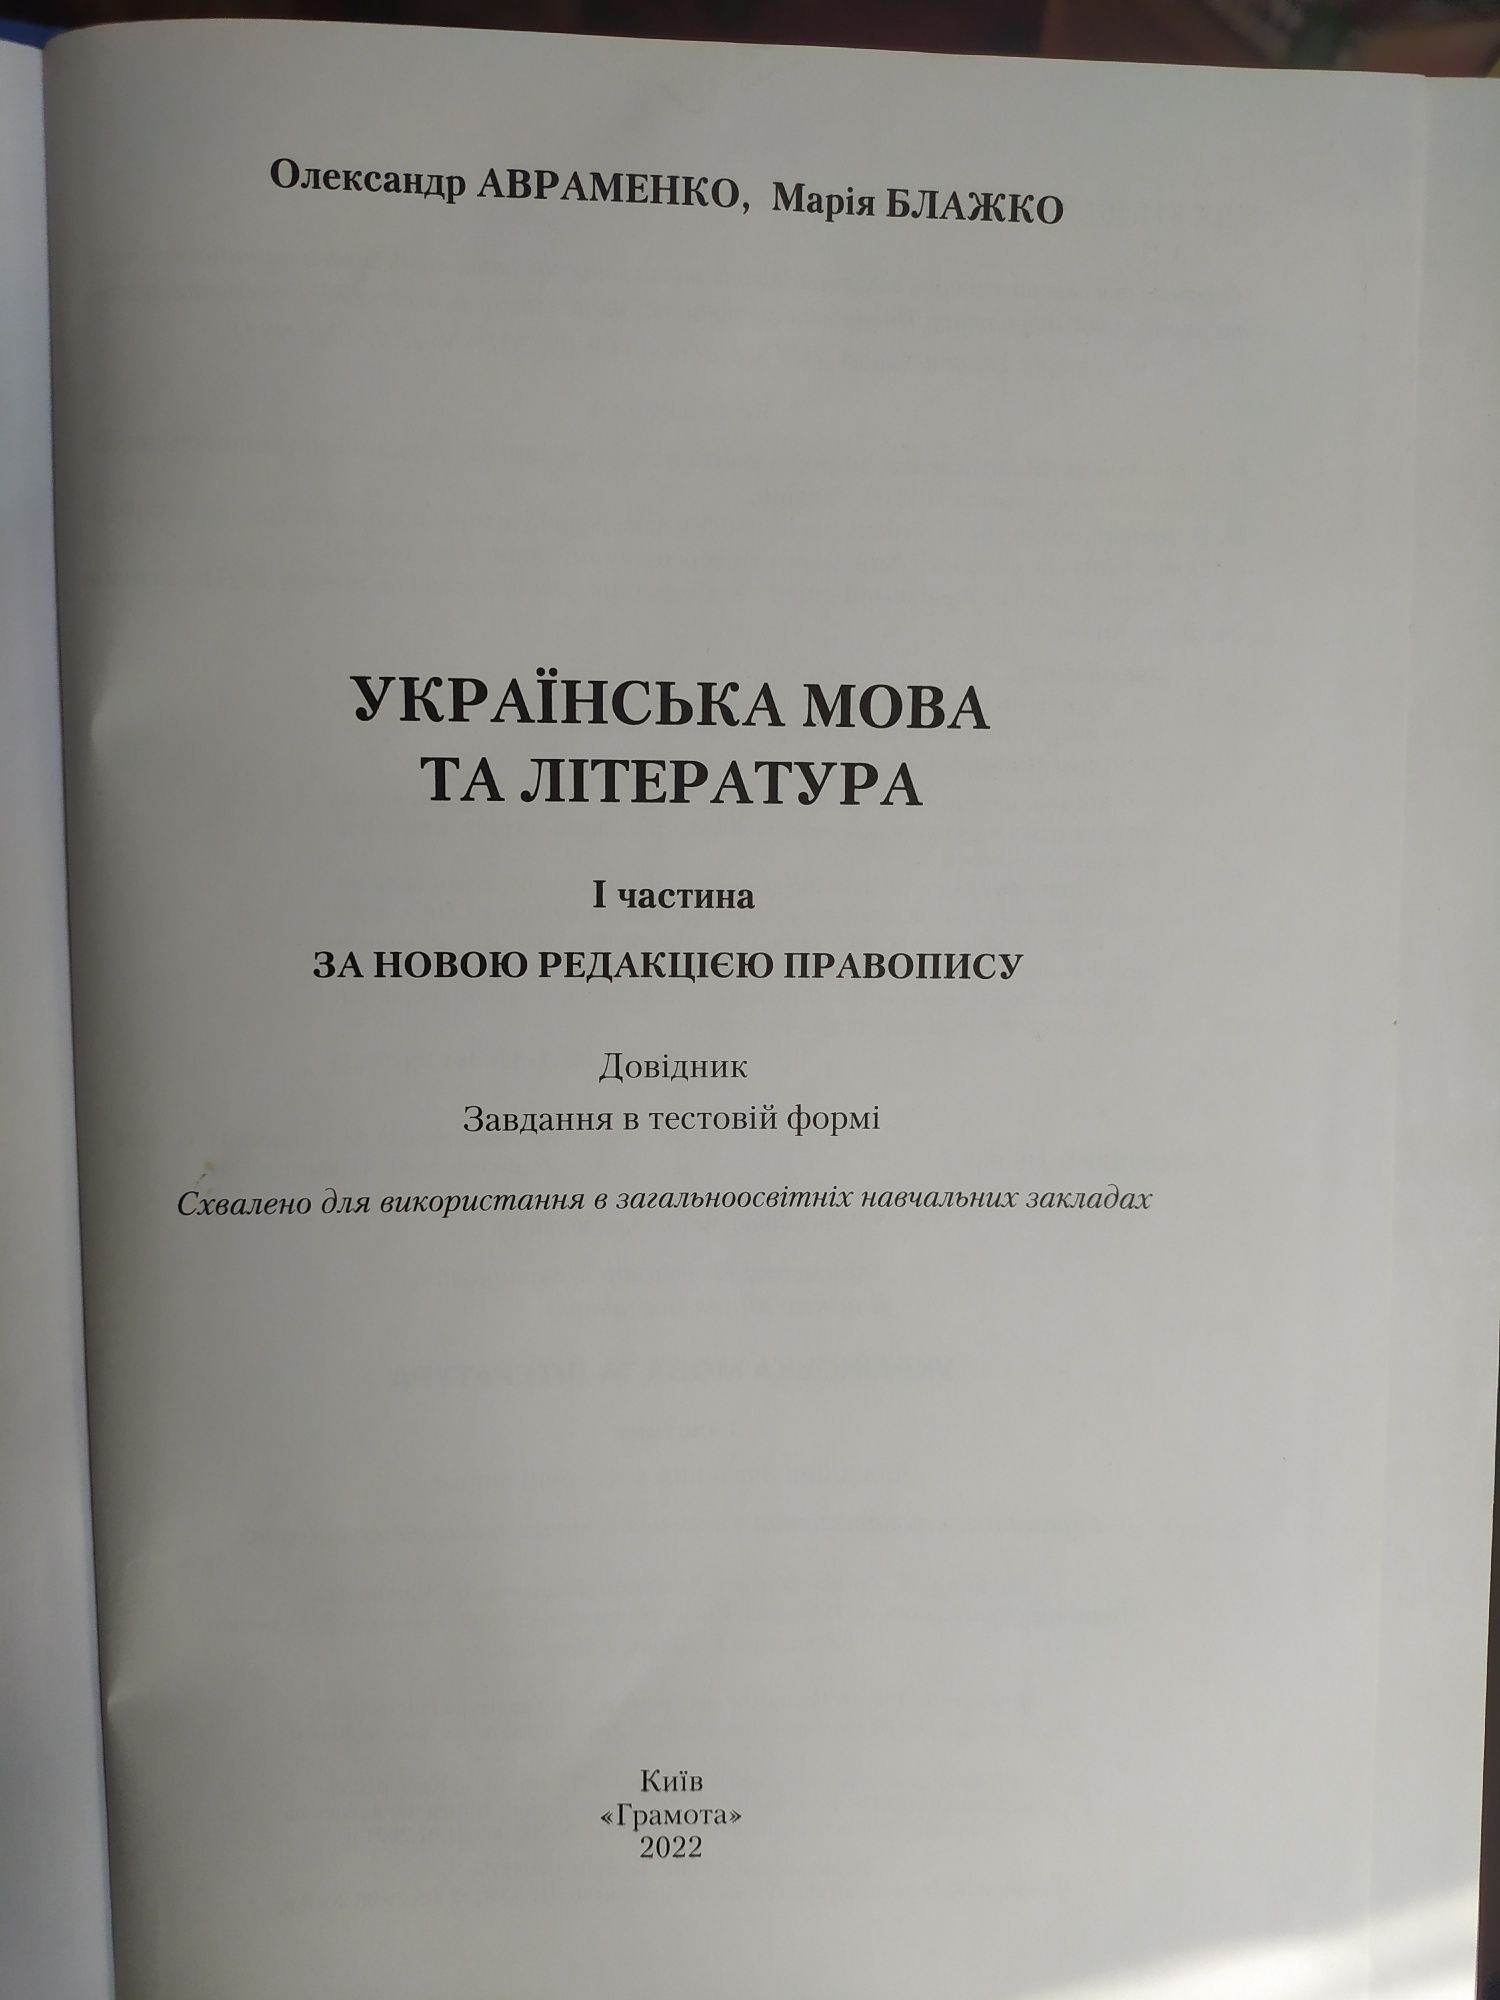 І та ІІ частини О.Авраменко "Українська мова та література"  2023